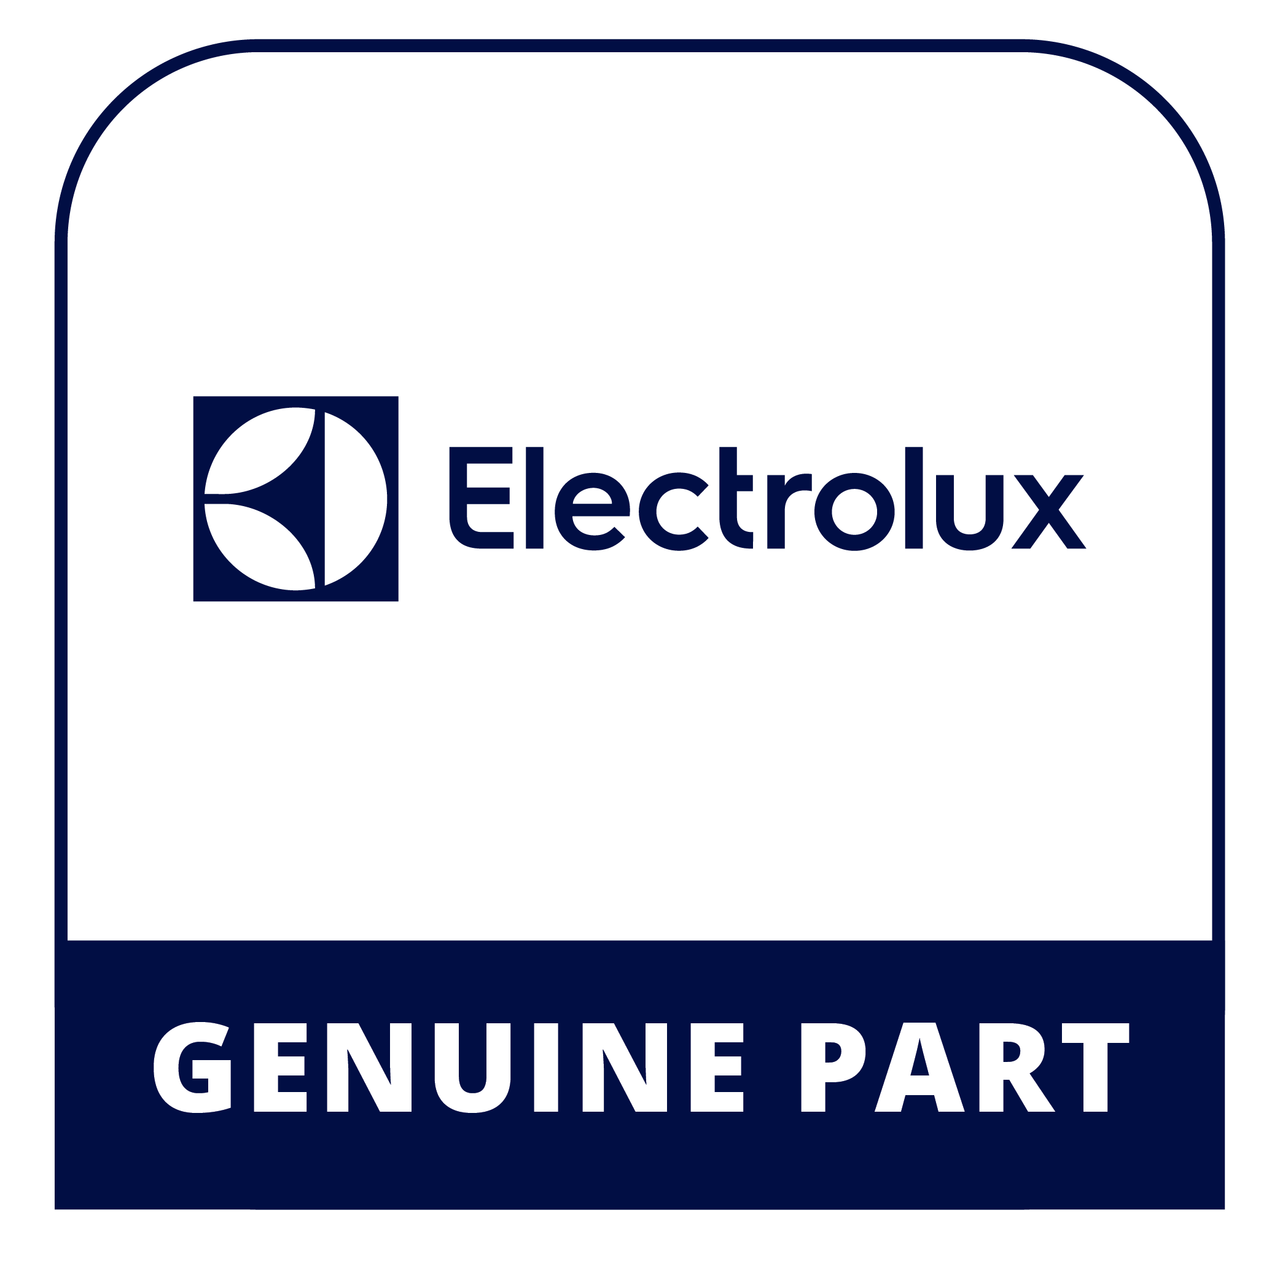 Frigidaire - Electrolux 5303212828 - Clip - Genuine Electrolux Part